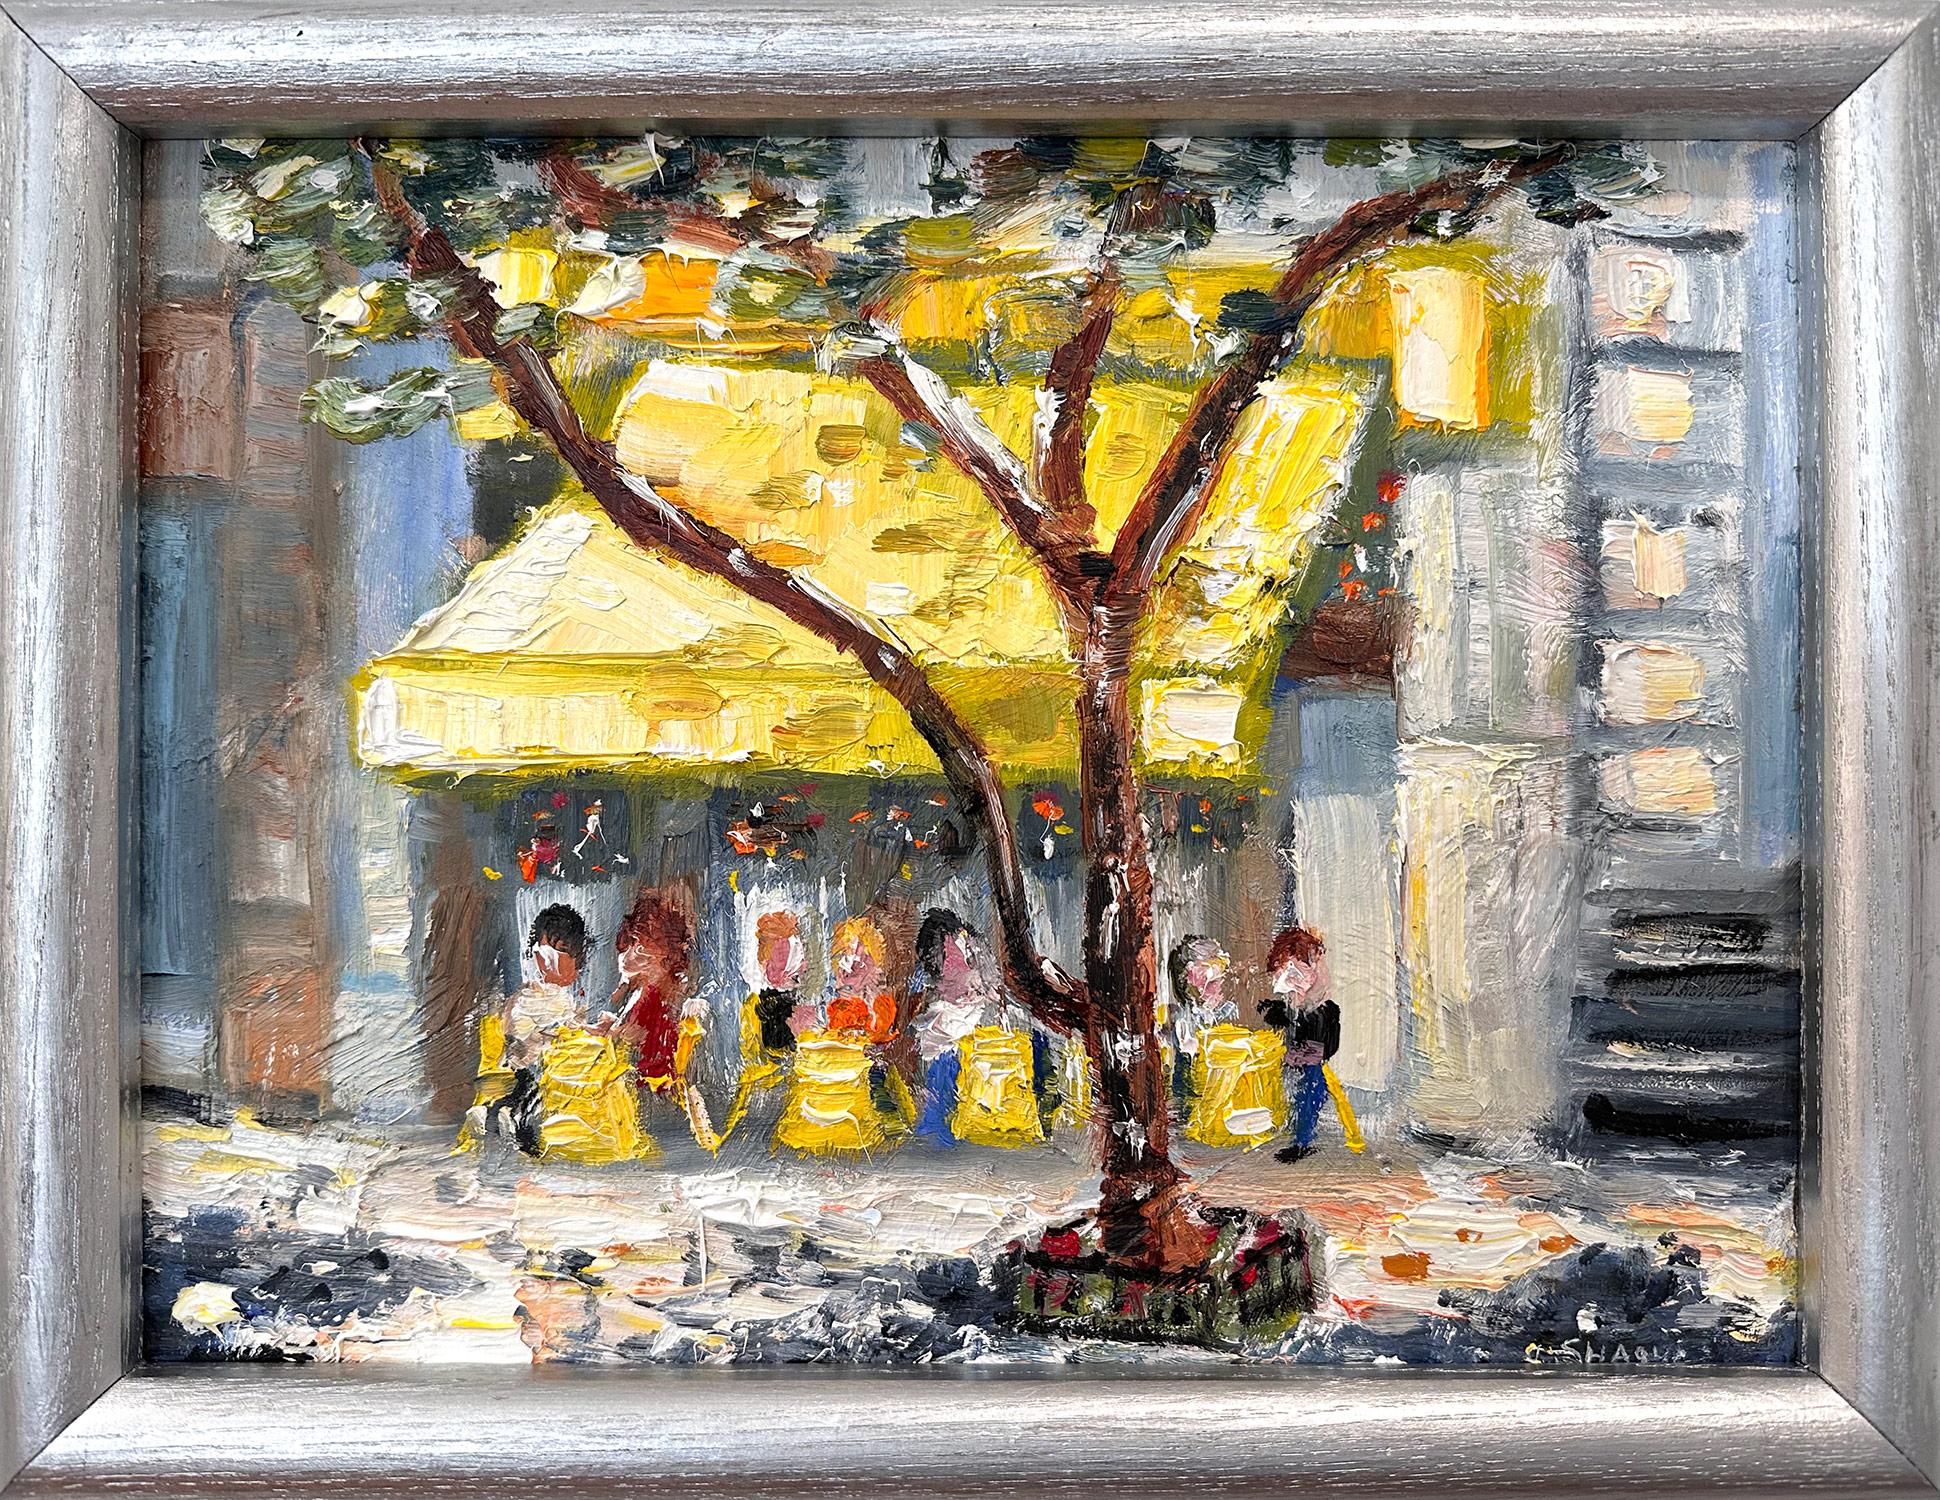 Landscape Painting Cindy Shaoul - "Brunch at Cipriani" Peinture à l'huile d'un restaurant en plein air dans le quartier de Soho à New York